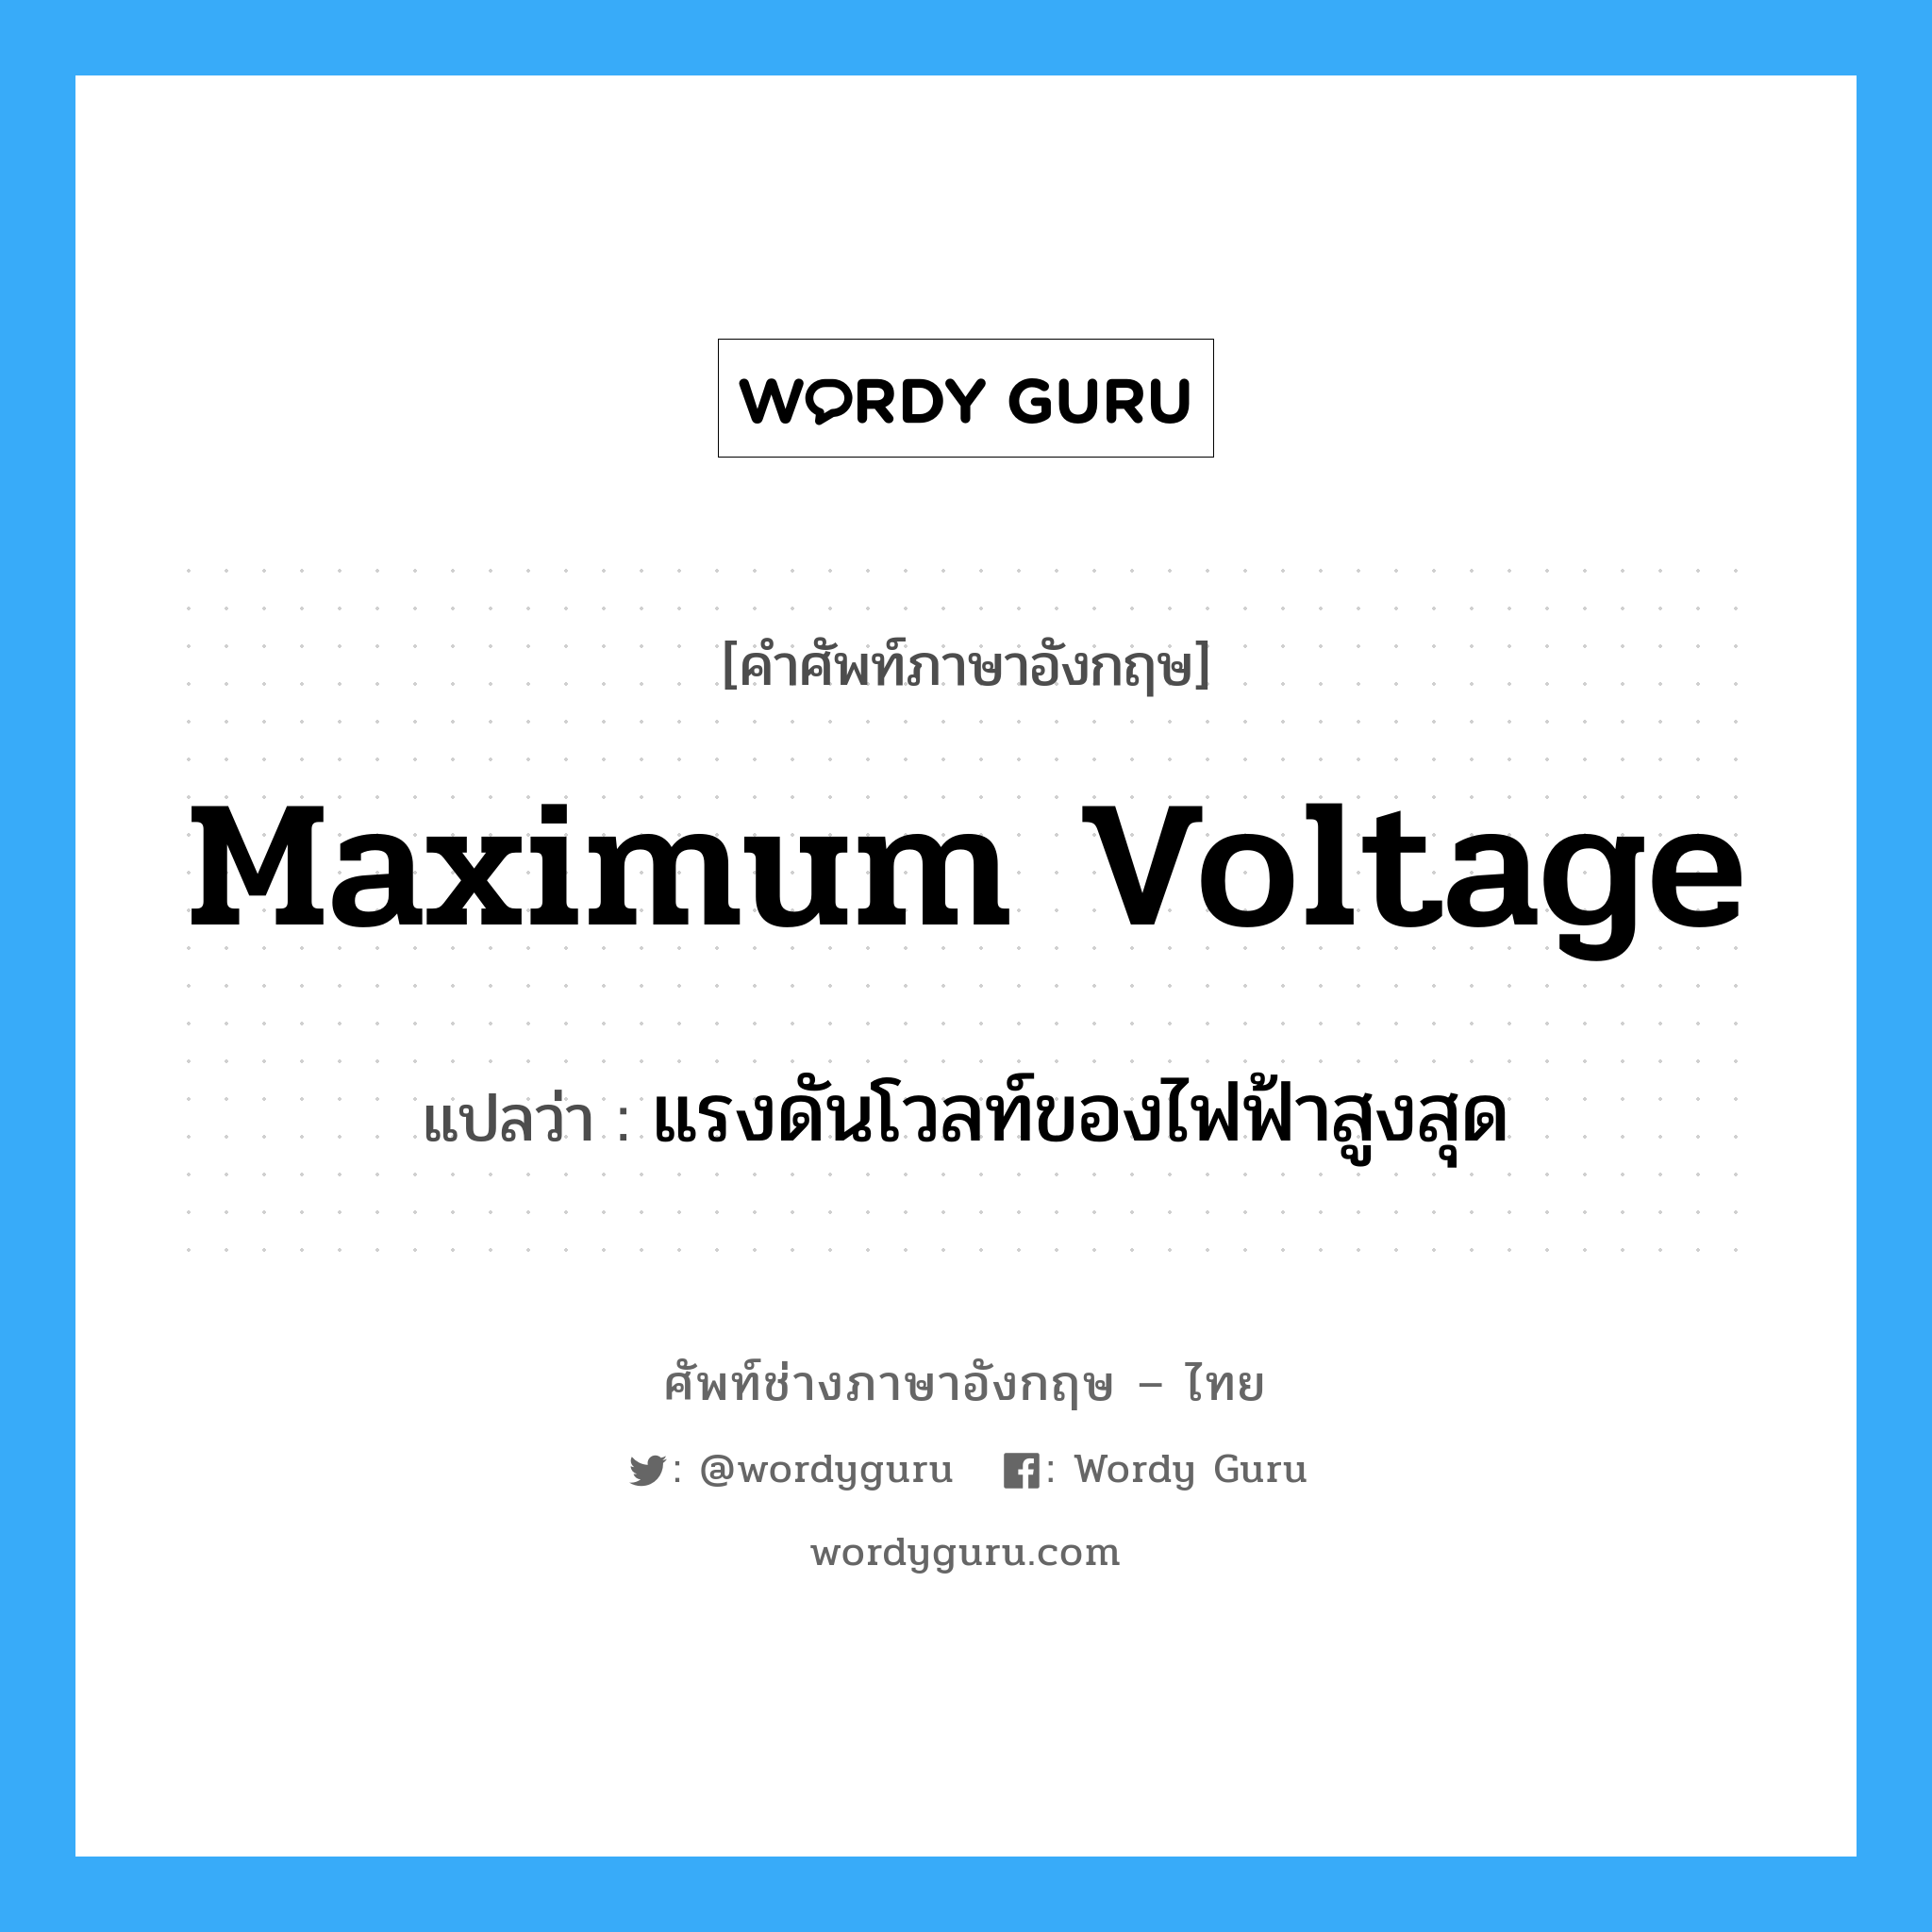 maximum voltage แปลว่า?, คำศัพท์ช่างภาษาอังกฤษ - ไทย maximum voltage คำศัพท์ภาษาอังกฤษ maximum voltage แปลว่า แรงดันโวลท์ของไฟฟ้าสูงสุด